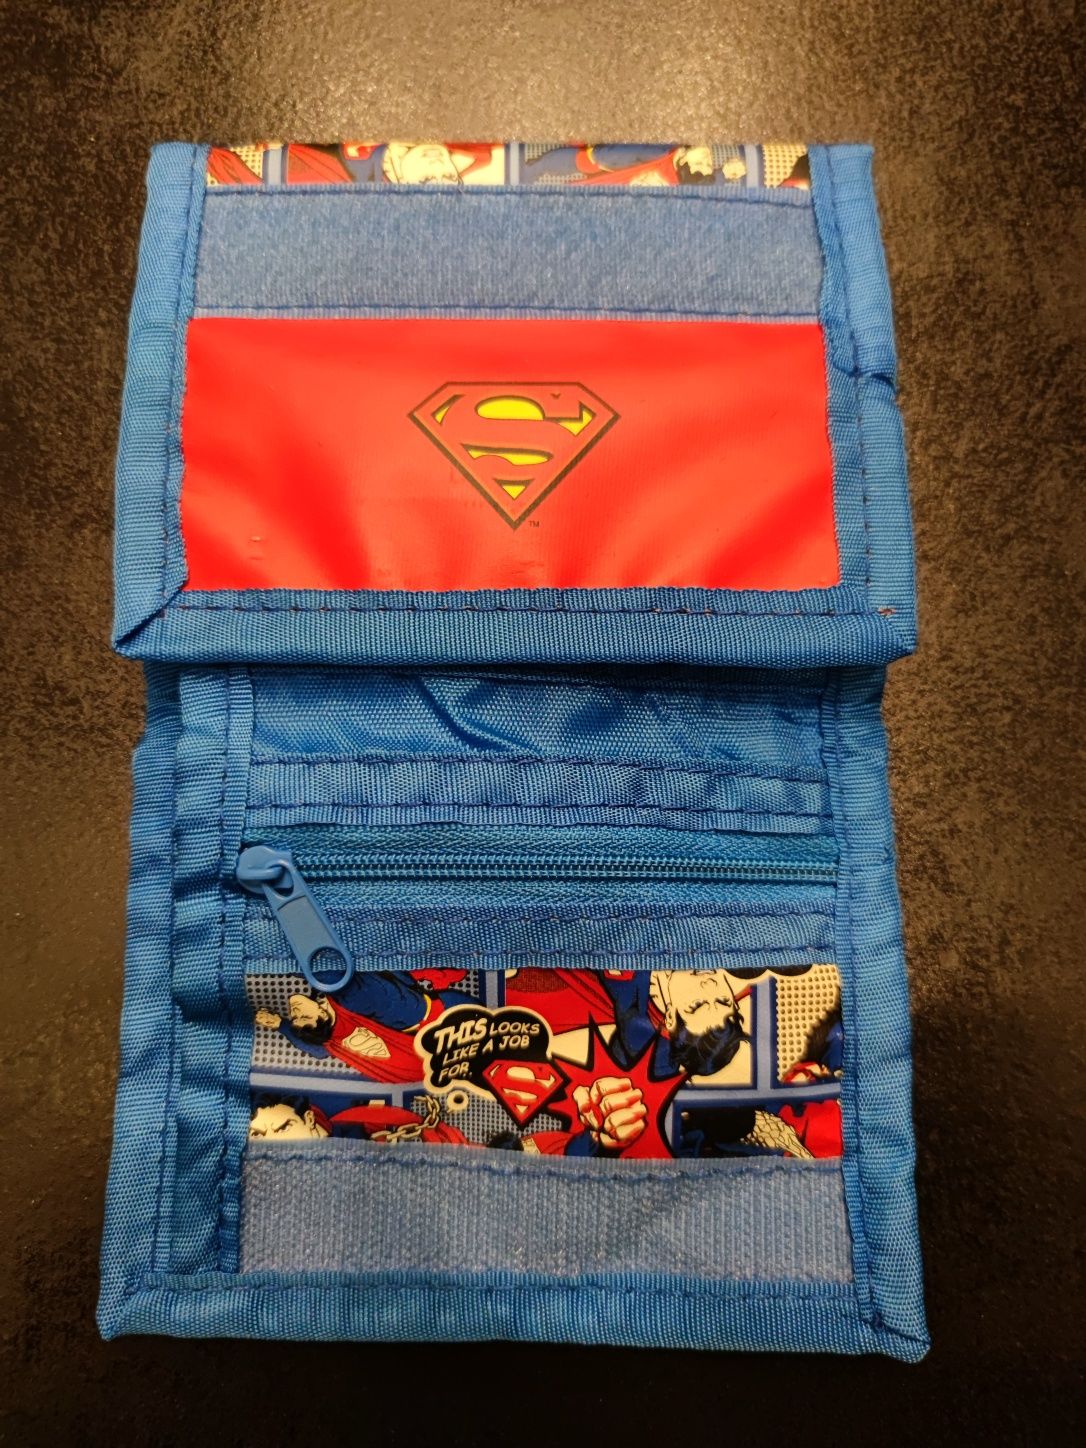 Trzyczęściowy portfel Superman; przegródki na banknoty, karty i monety